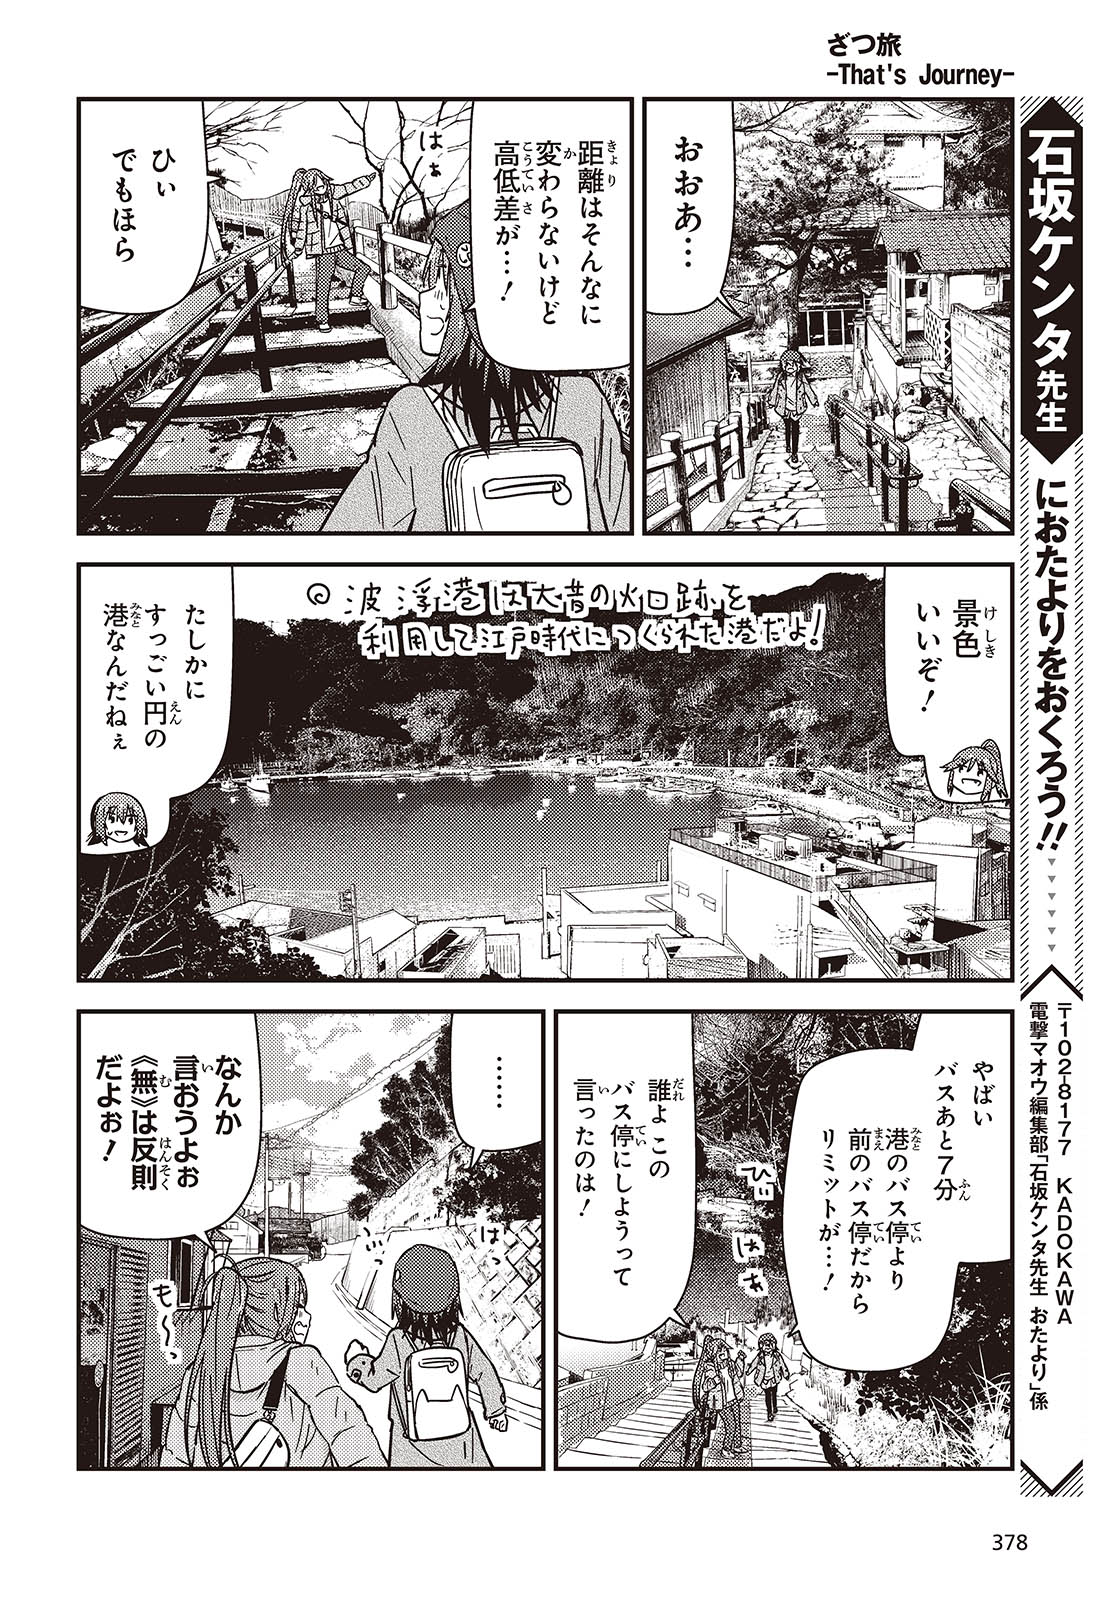 ざつ旅-That’s Journey- 第37話 - Page 22